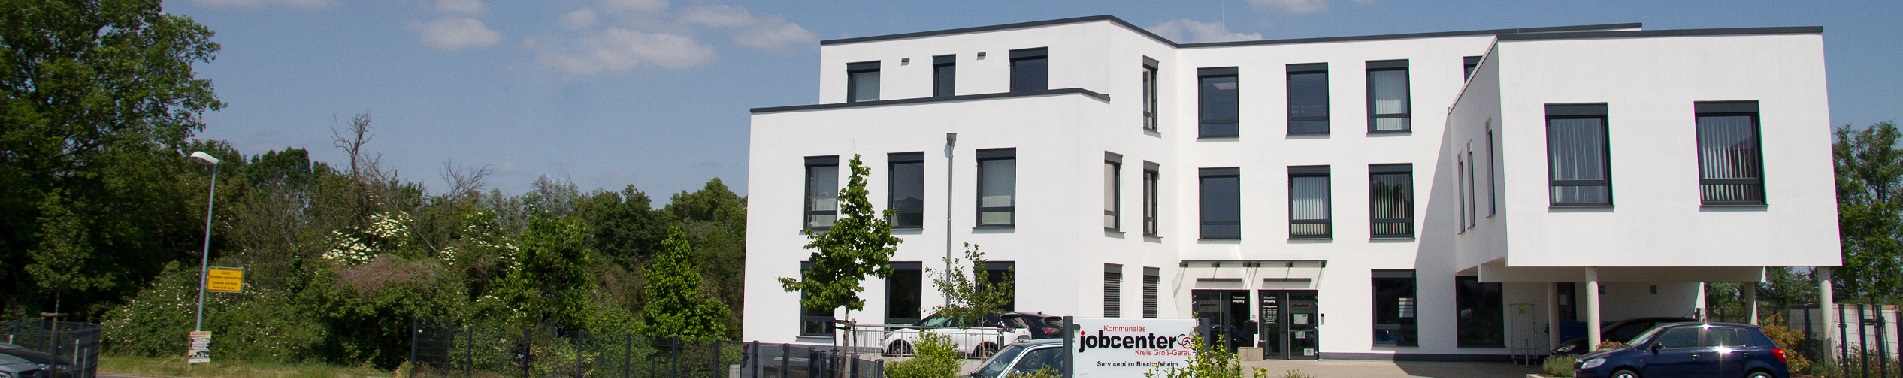 Aussenansicht des Gebäudes des Jobcenters in Bischofsheim